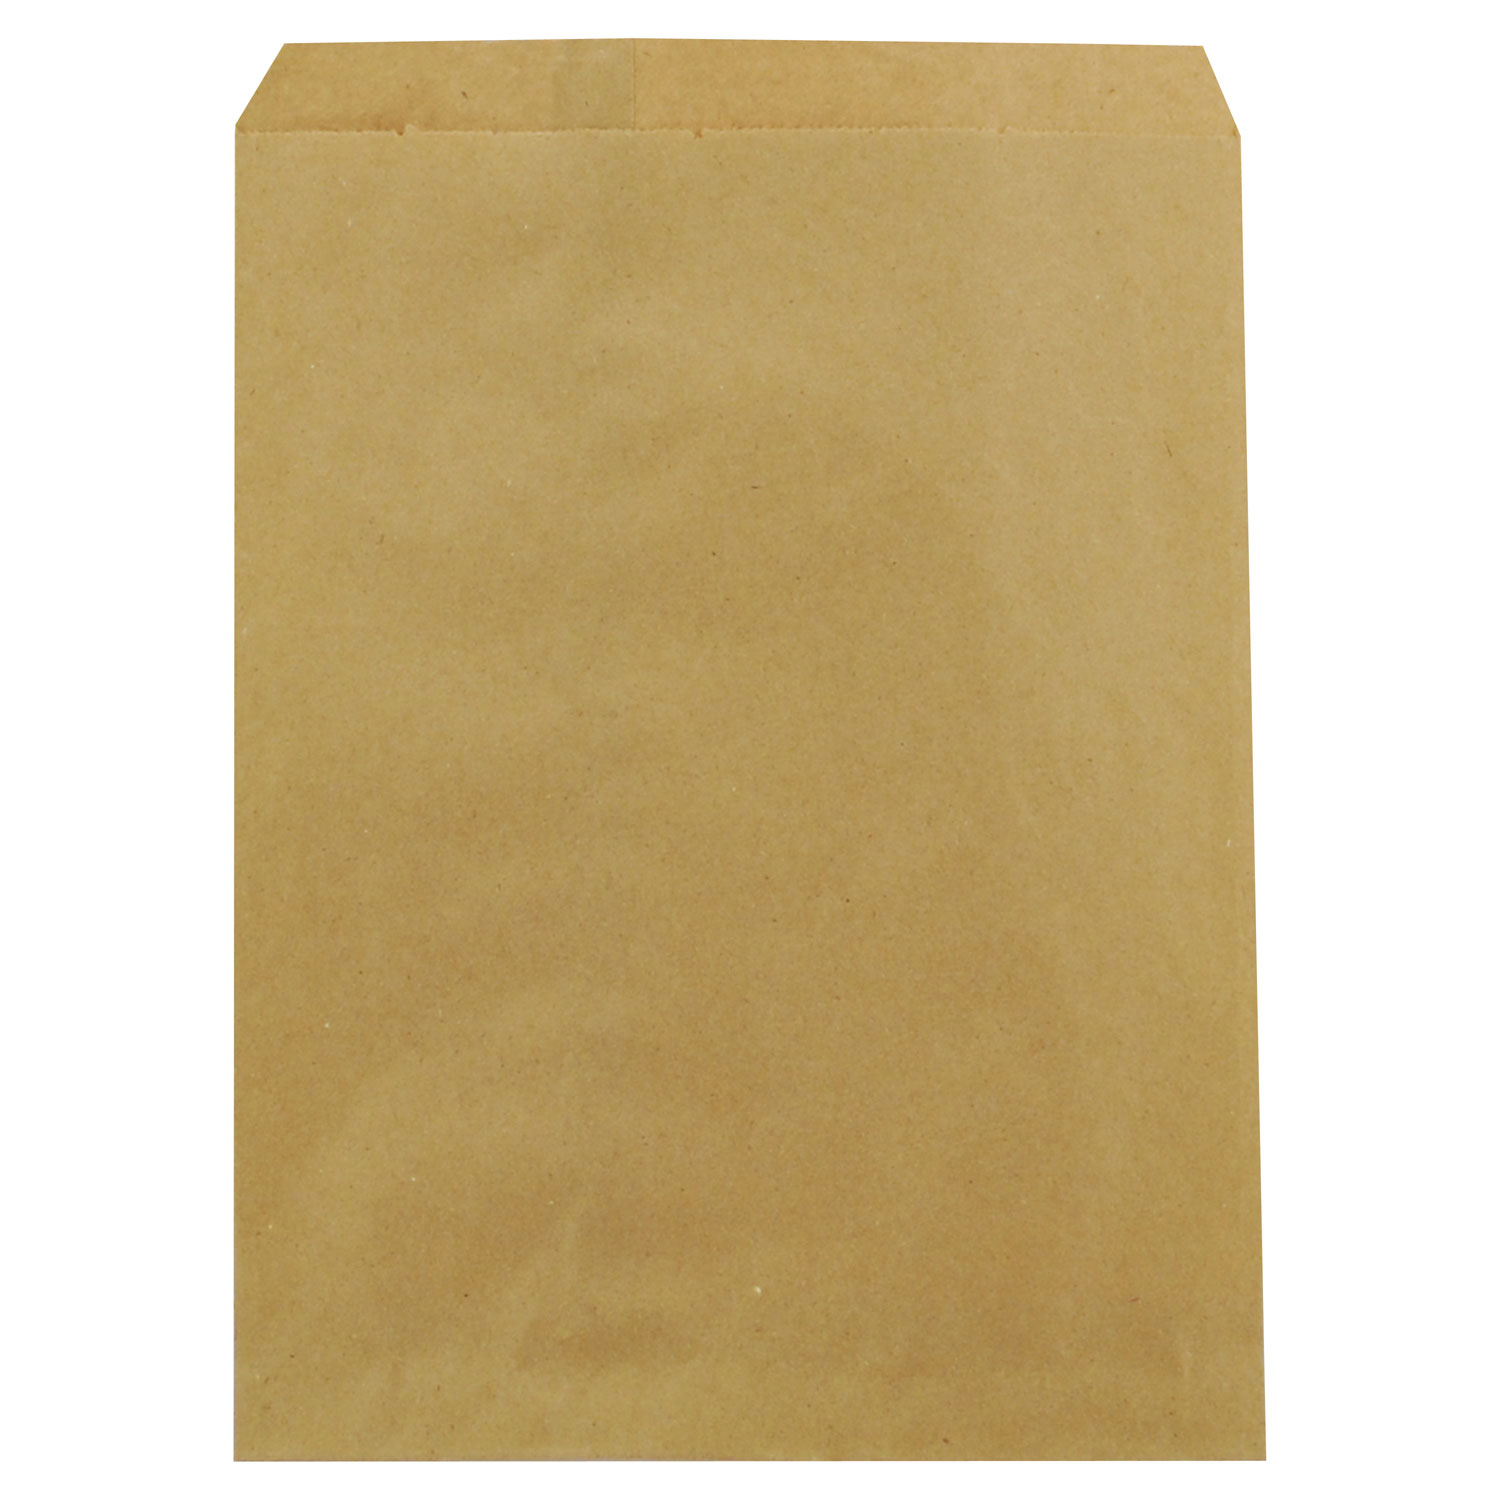 Kraft Paper Bags, 8.5